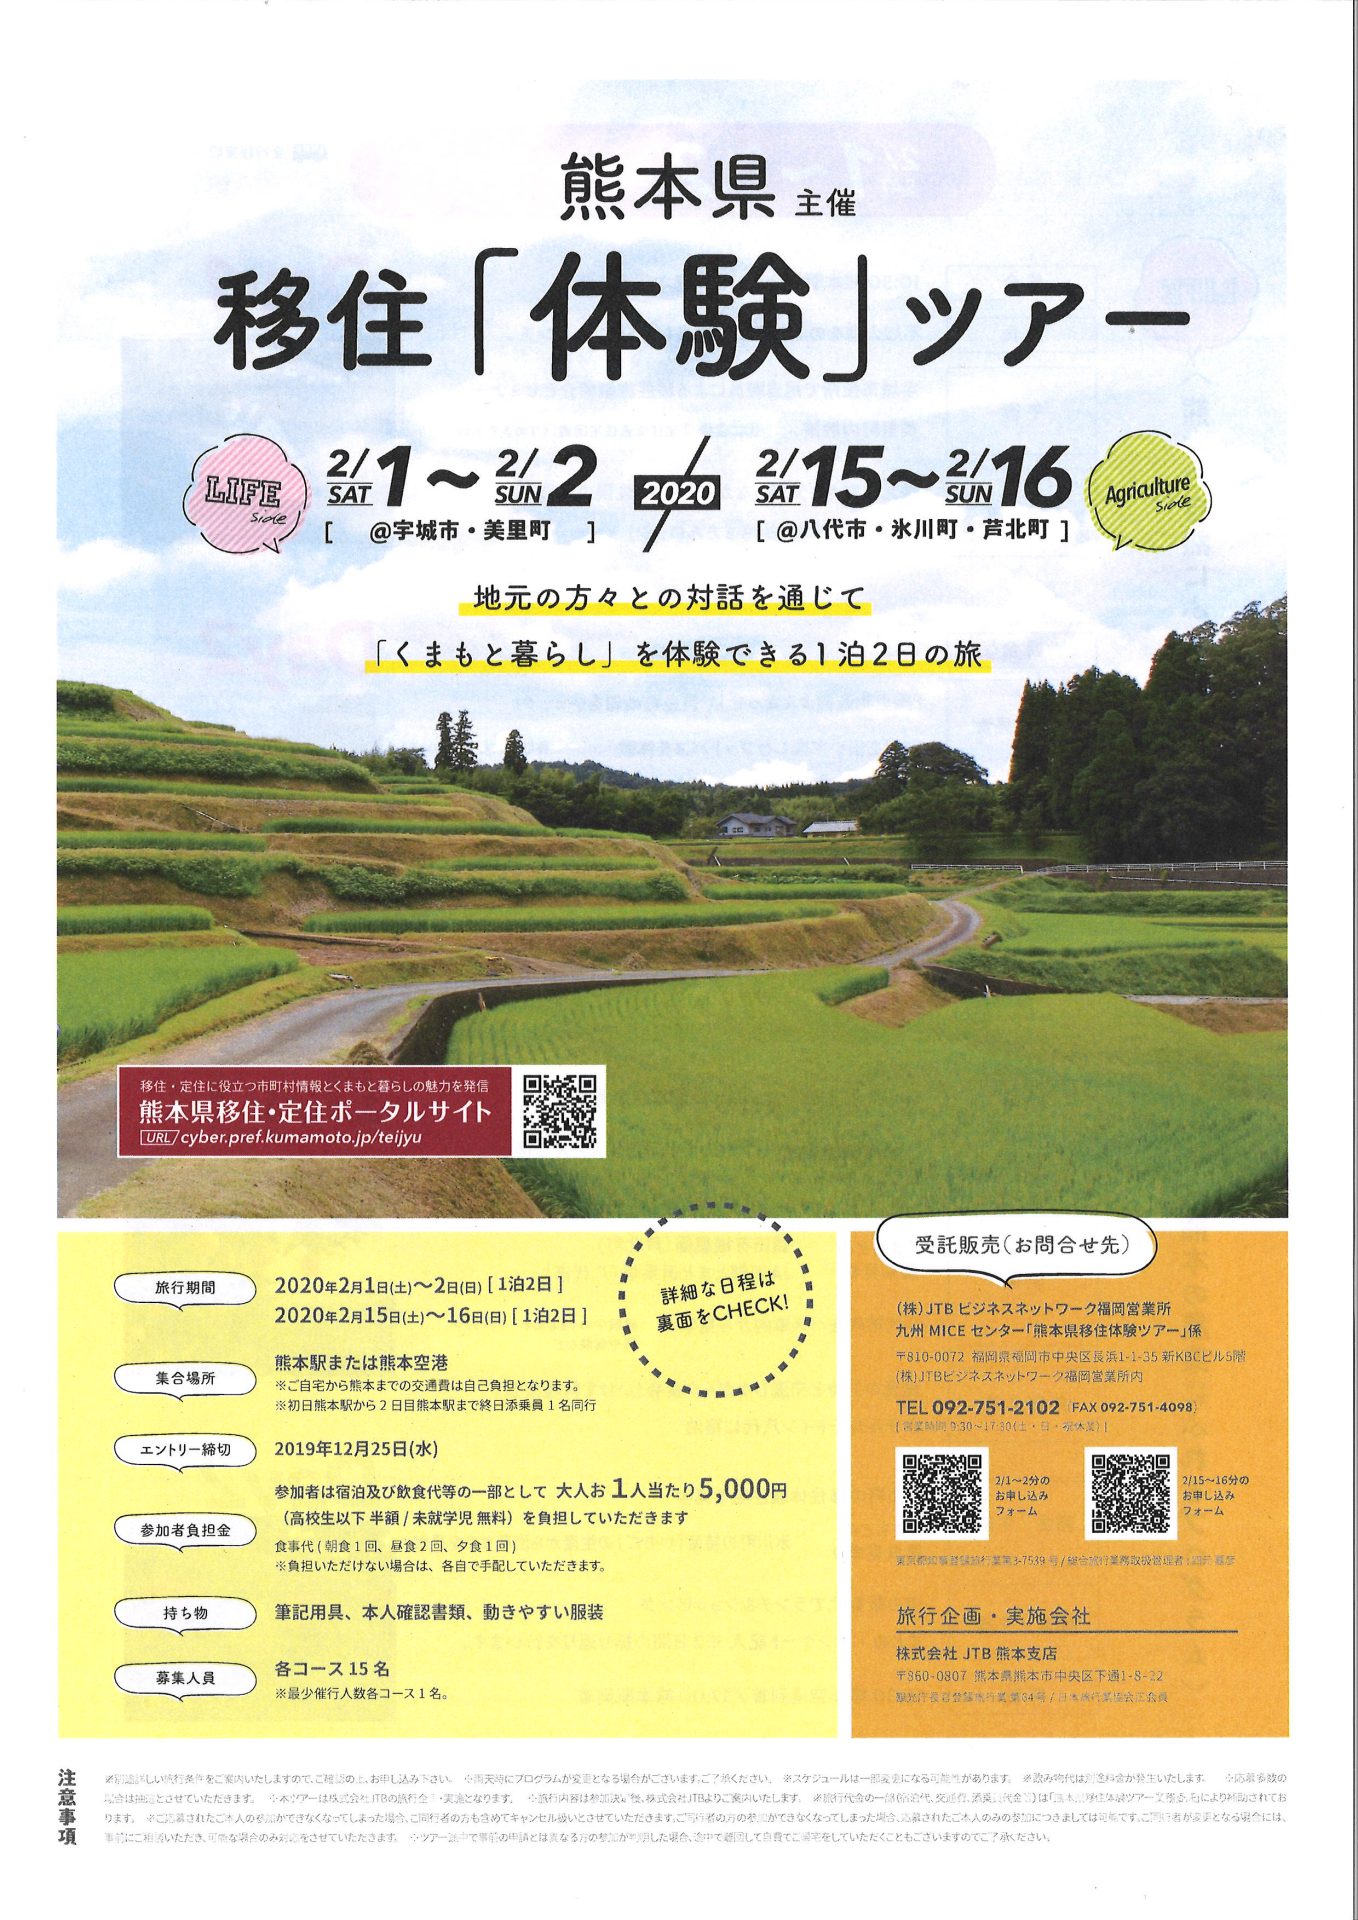 【追加募集】熊本県主催 移住「体験」ツアー | 移住関連イベント情報